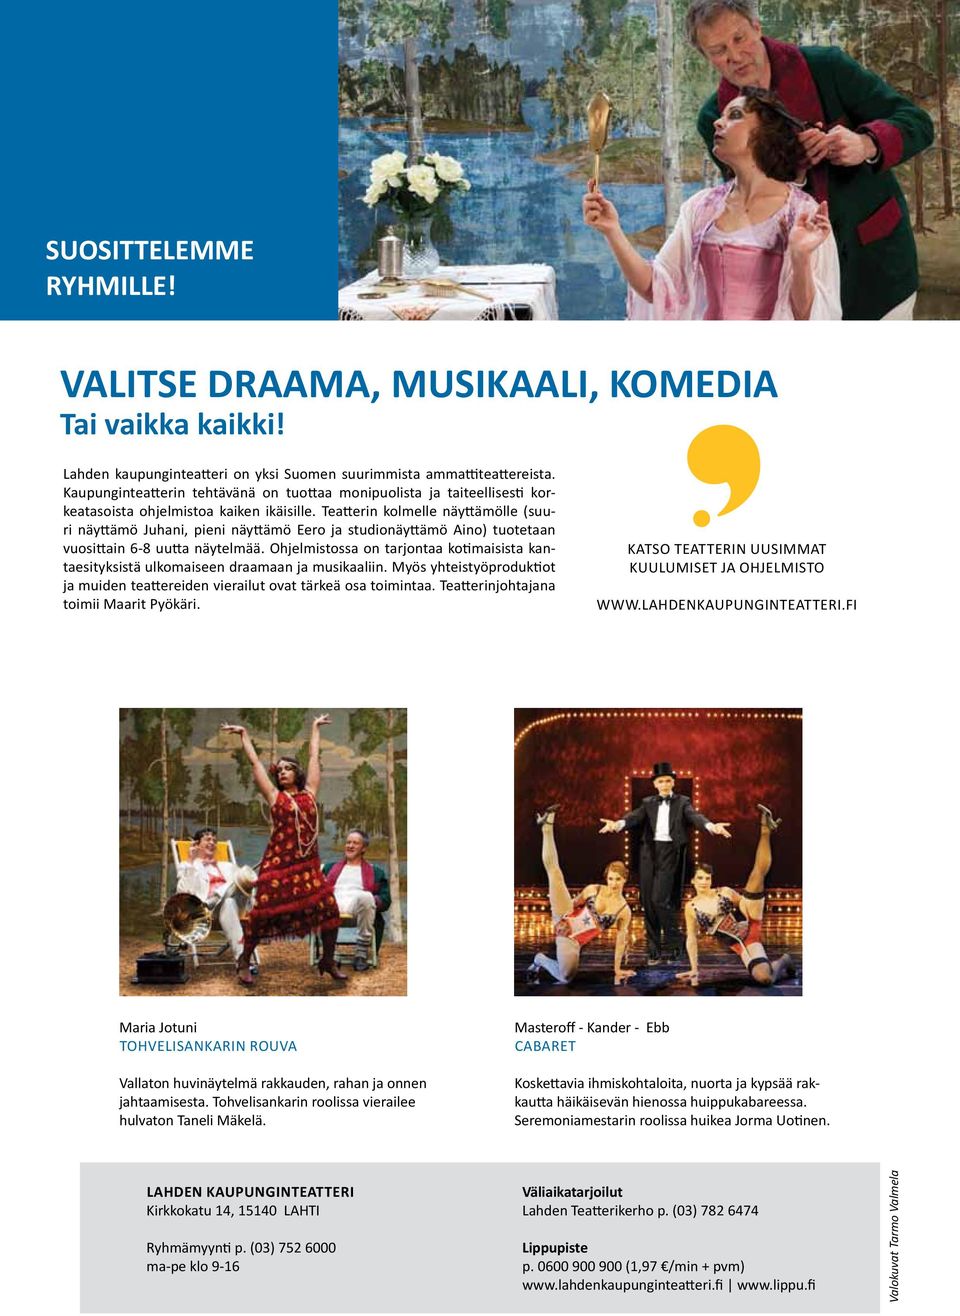 Teatterin kolmelle näyttämölle (suuri näyttämö Juhani, pieni näyttämö Eero ja studionäyttämö Aino) tuotetaan vuosittain 6-8 uutta näytelmää.